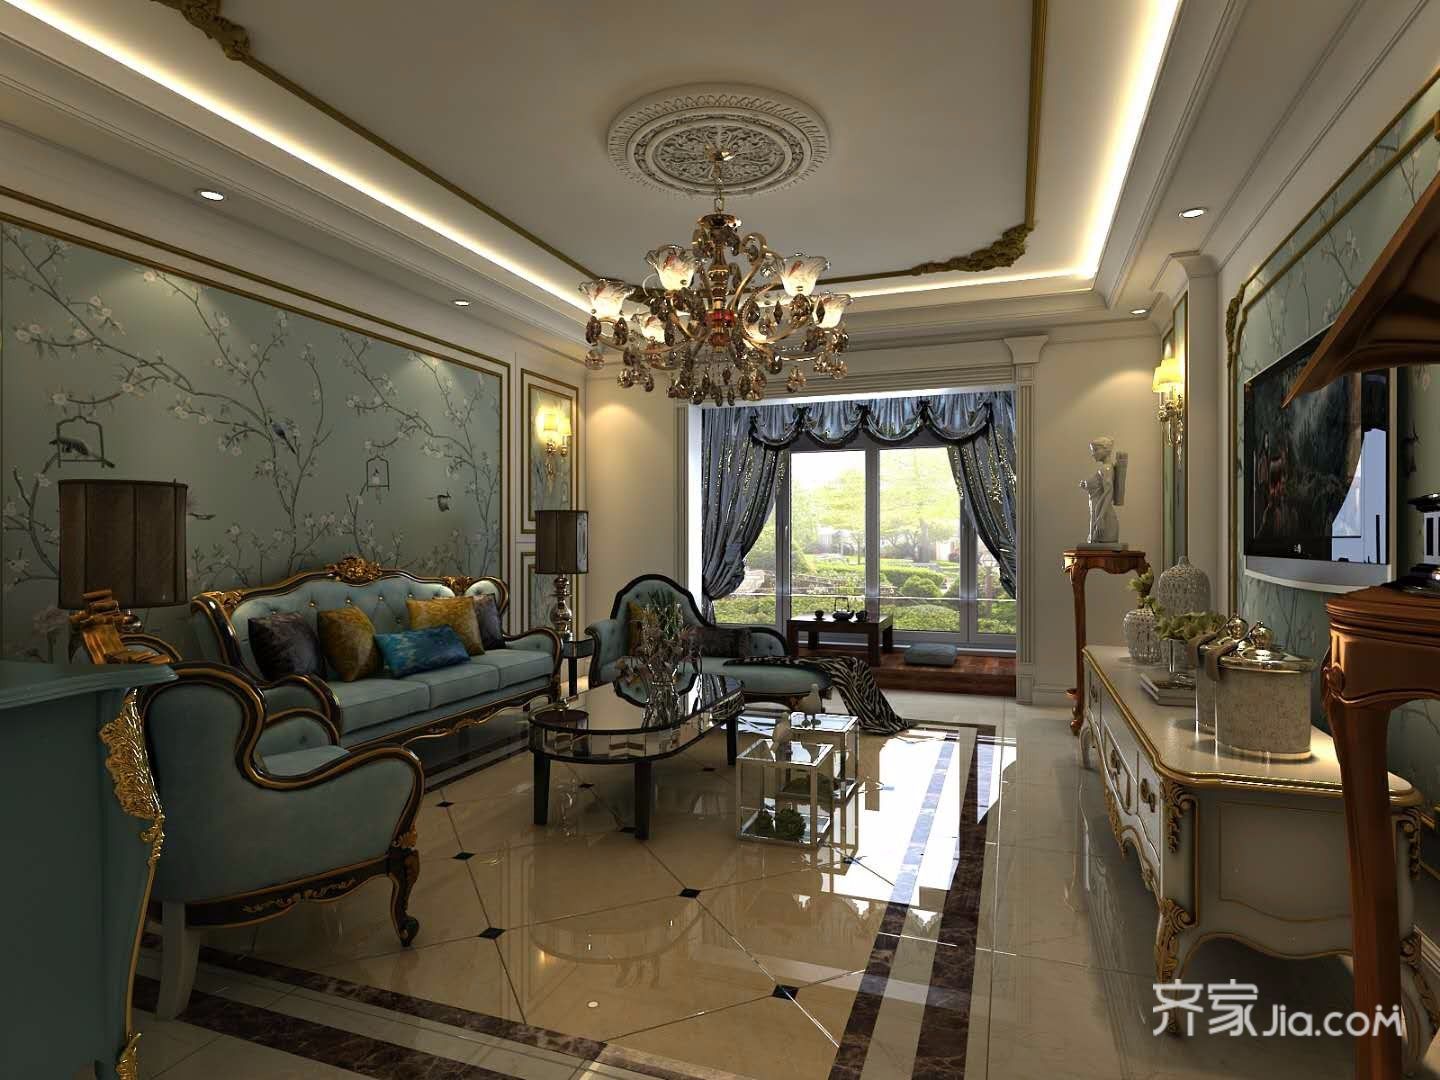 豪华型装修,四房装修,140平米以上装修,客厅,沙发背景墙,沙发,蓝色,欧式风格